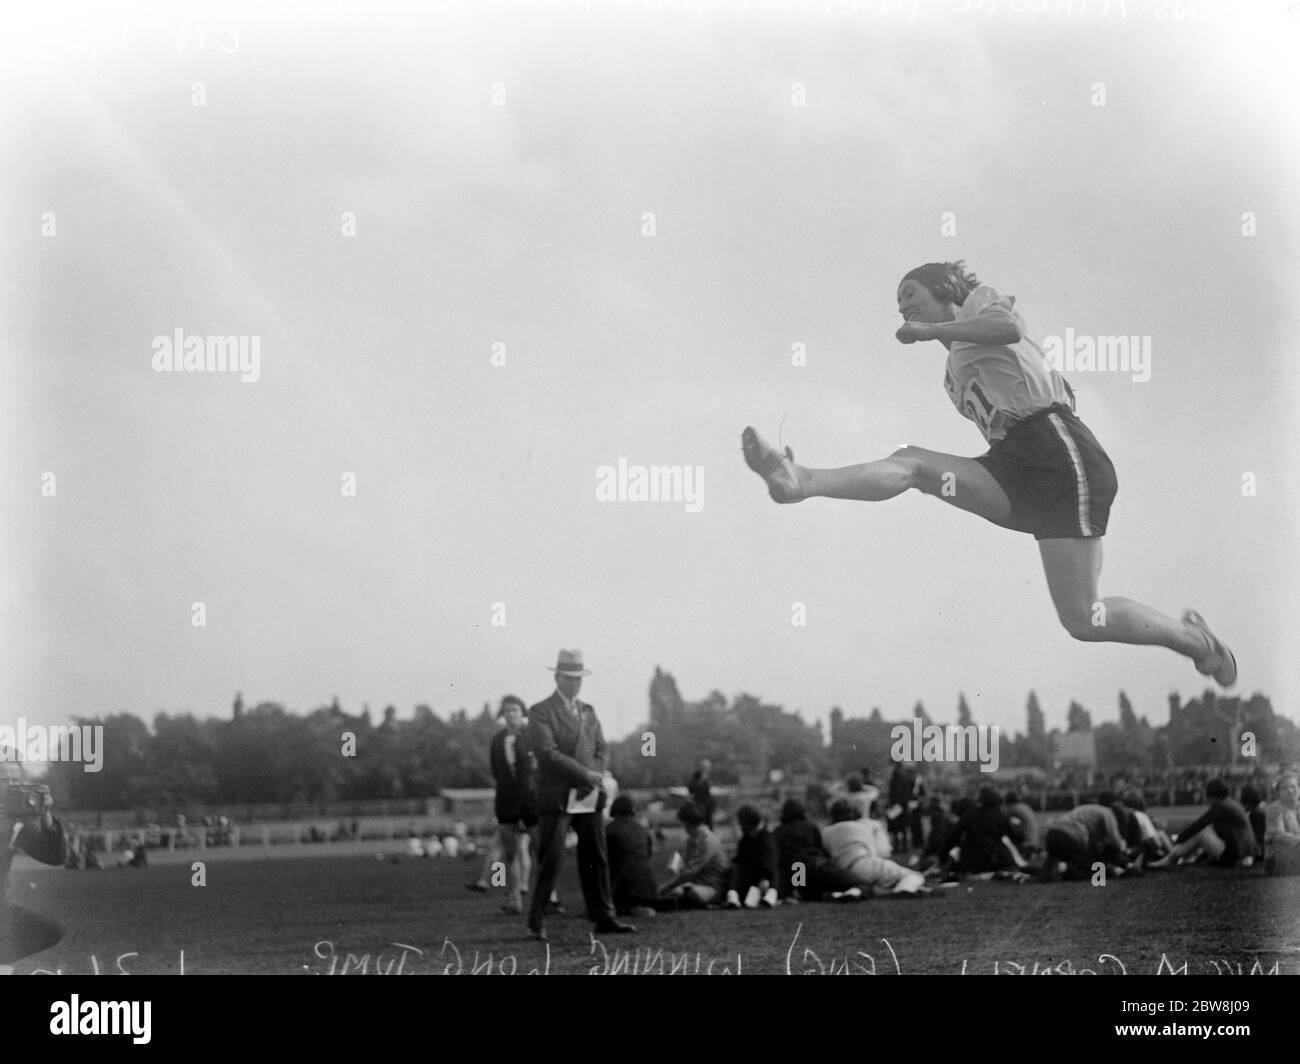 Mujeres atletas concurso triangular internacional en Birmingham. Miss M Cornell ( Inglaterra ) gana el salto largo internacional. 26 de julio de 1930 Foto de stock